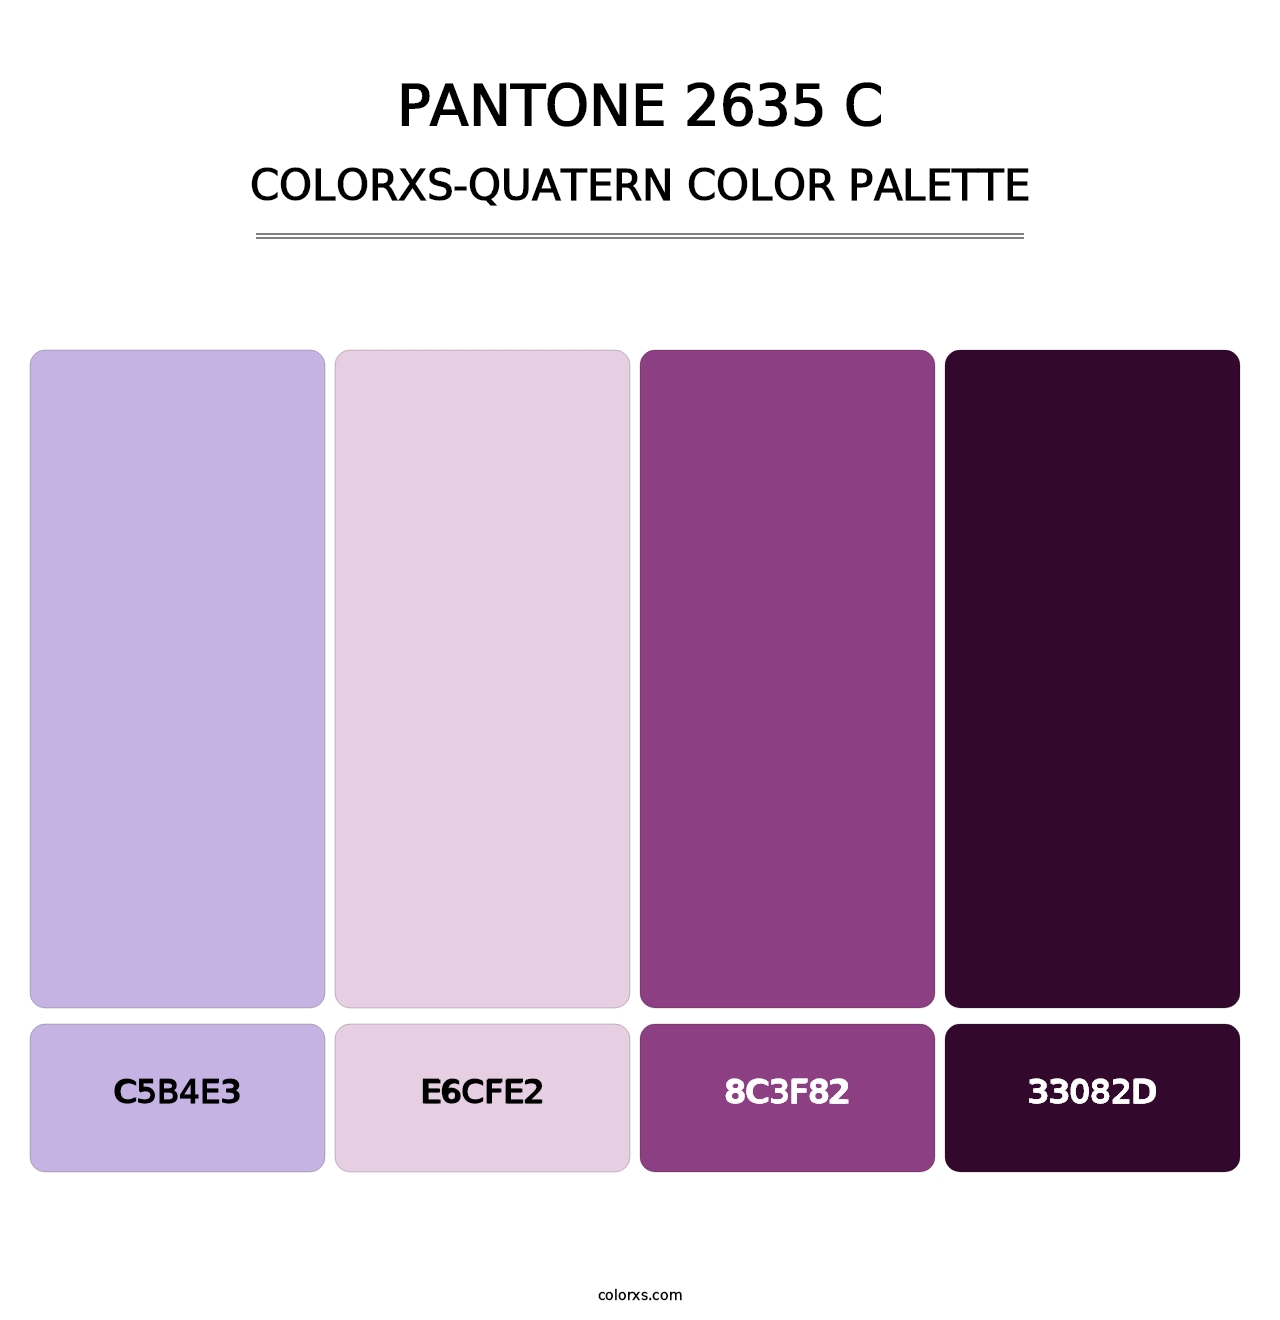 PANTONE 2635 C - Colorxs Quatern Palette